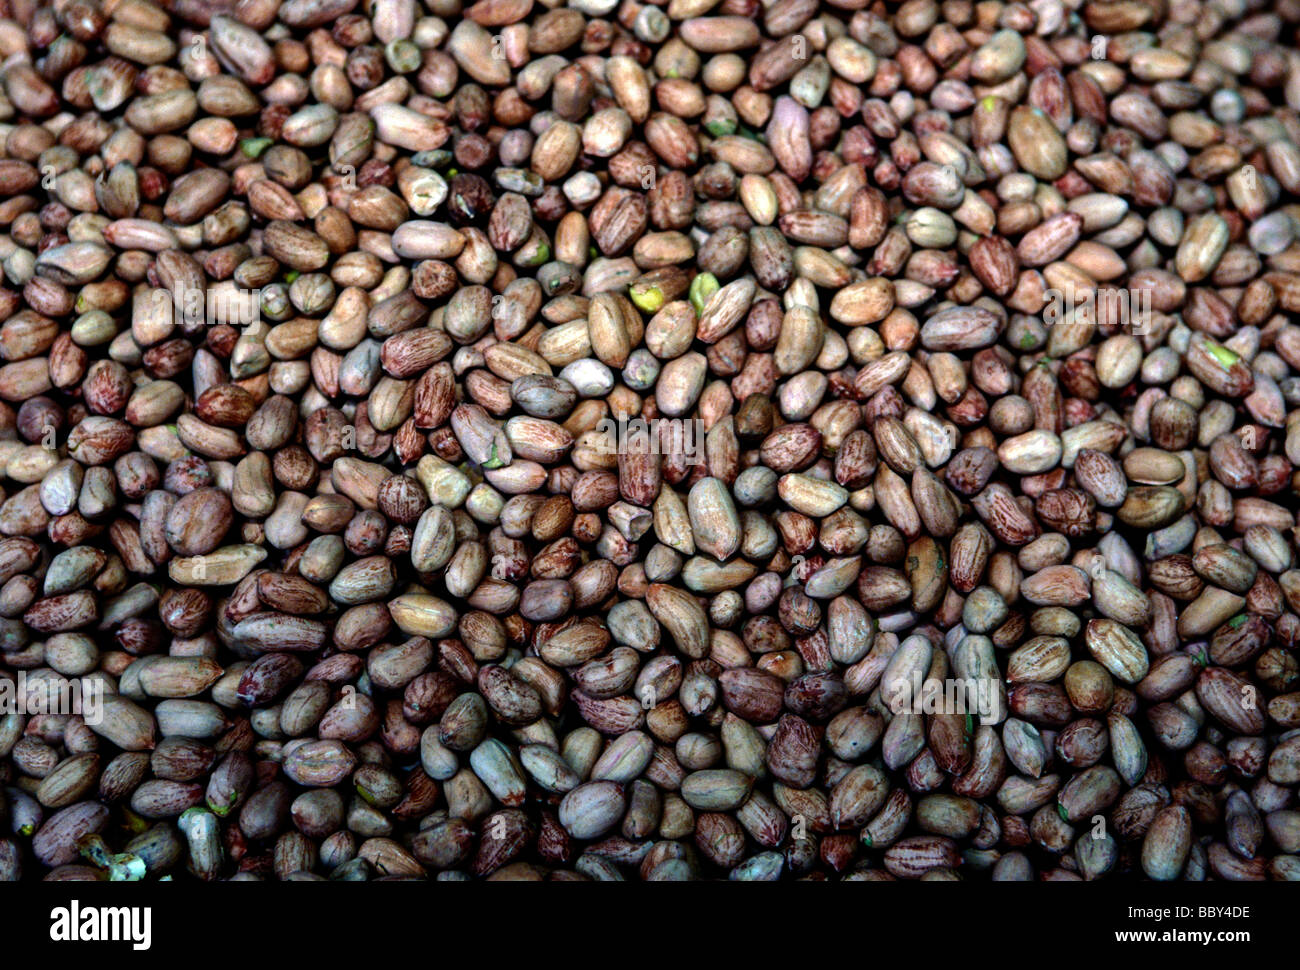 soy beans, mung bean, mung beans, mungbeans, open-air market, market, Puhuangyu market, city of Beijing, Beijing, Beijing Municipality, China, Asia Stock Photo